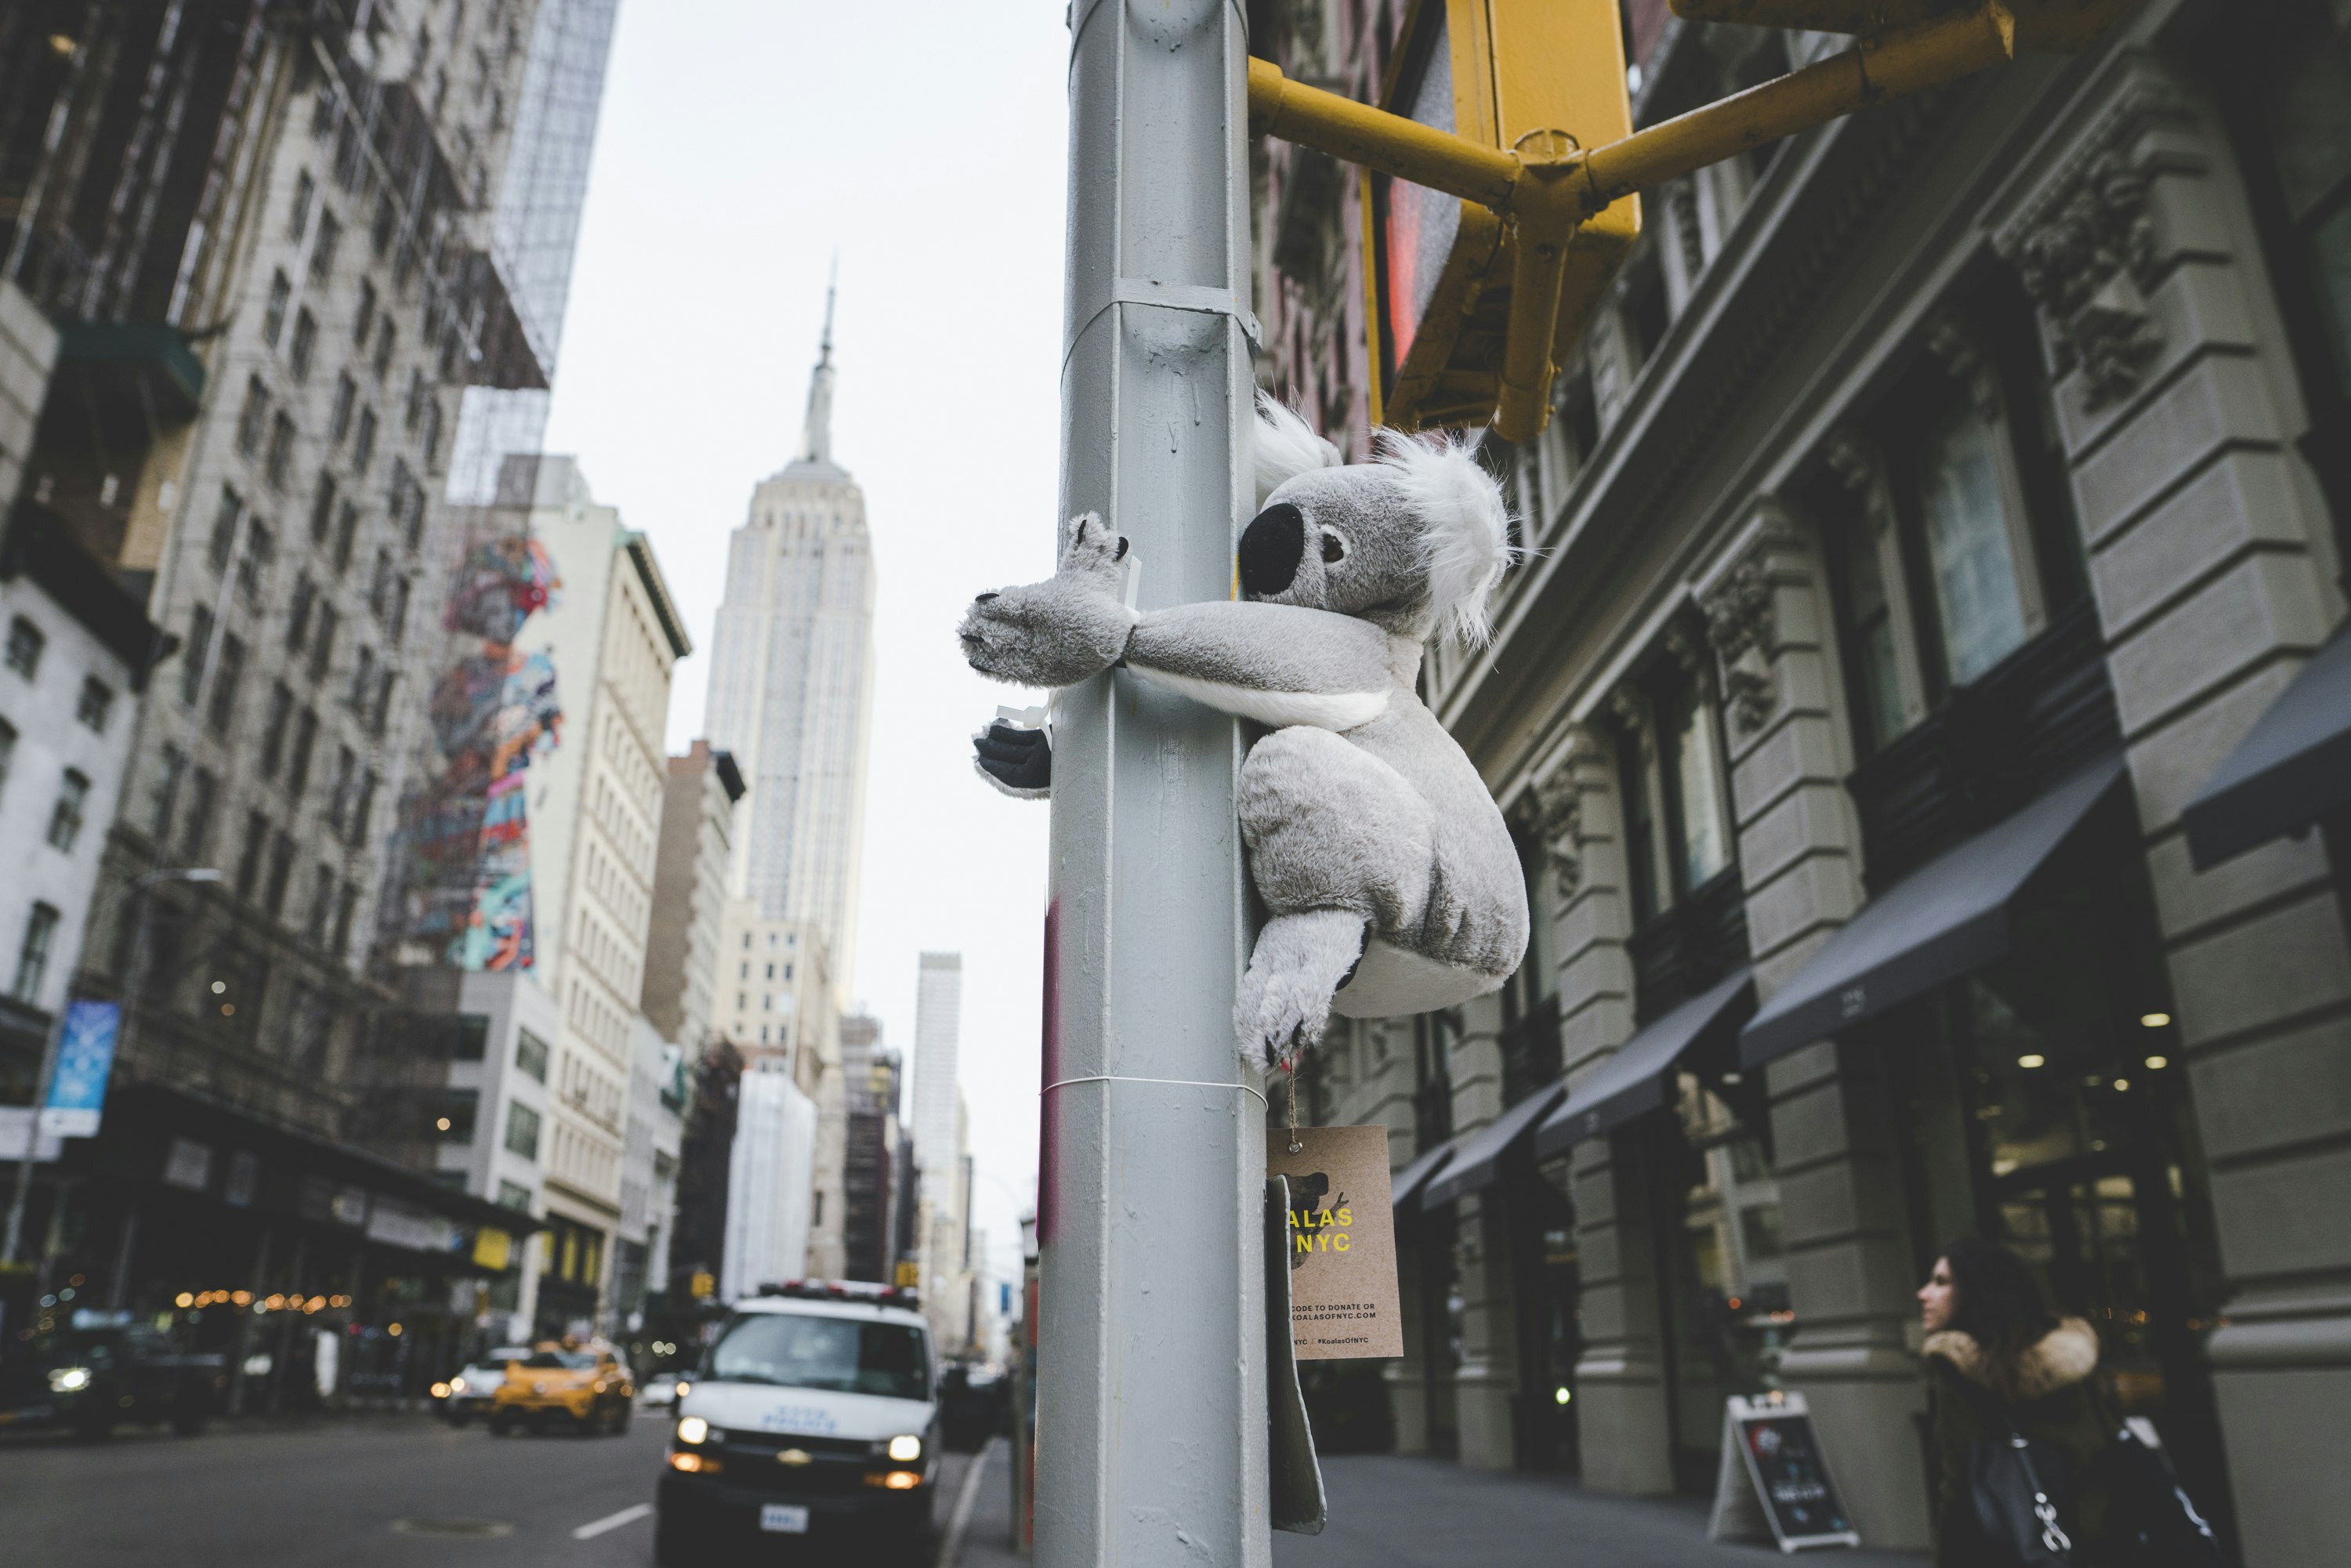 A stuffed koala hugs a lamppost in NYC